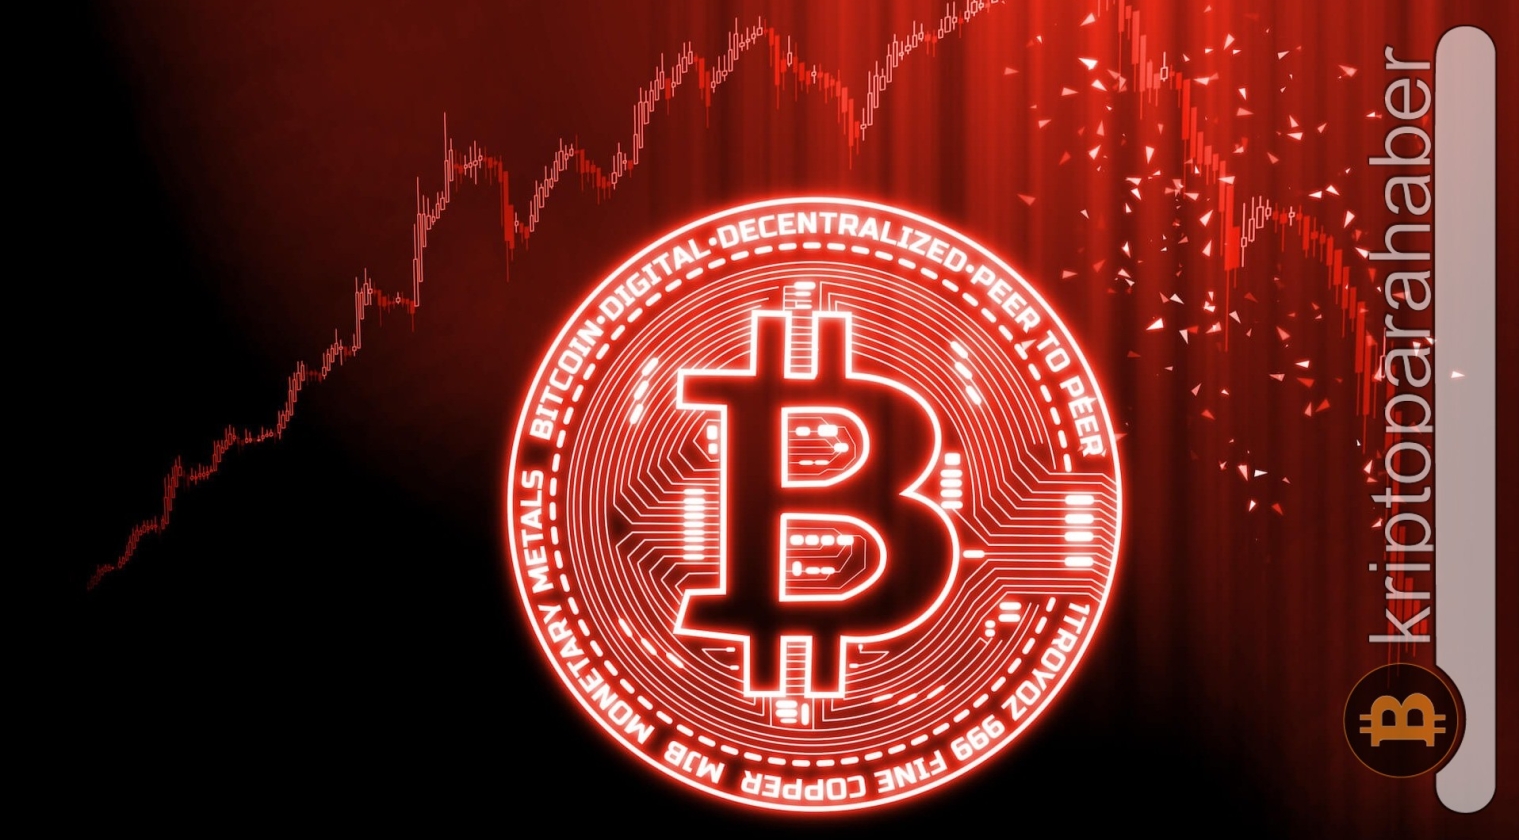 Kripto piyasasında düşüş devam ediyor! Bitcoin fiyatında son durum